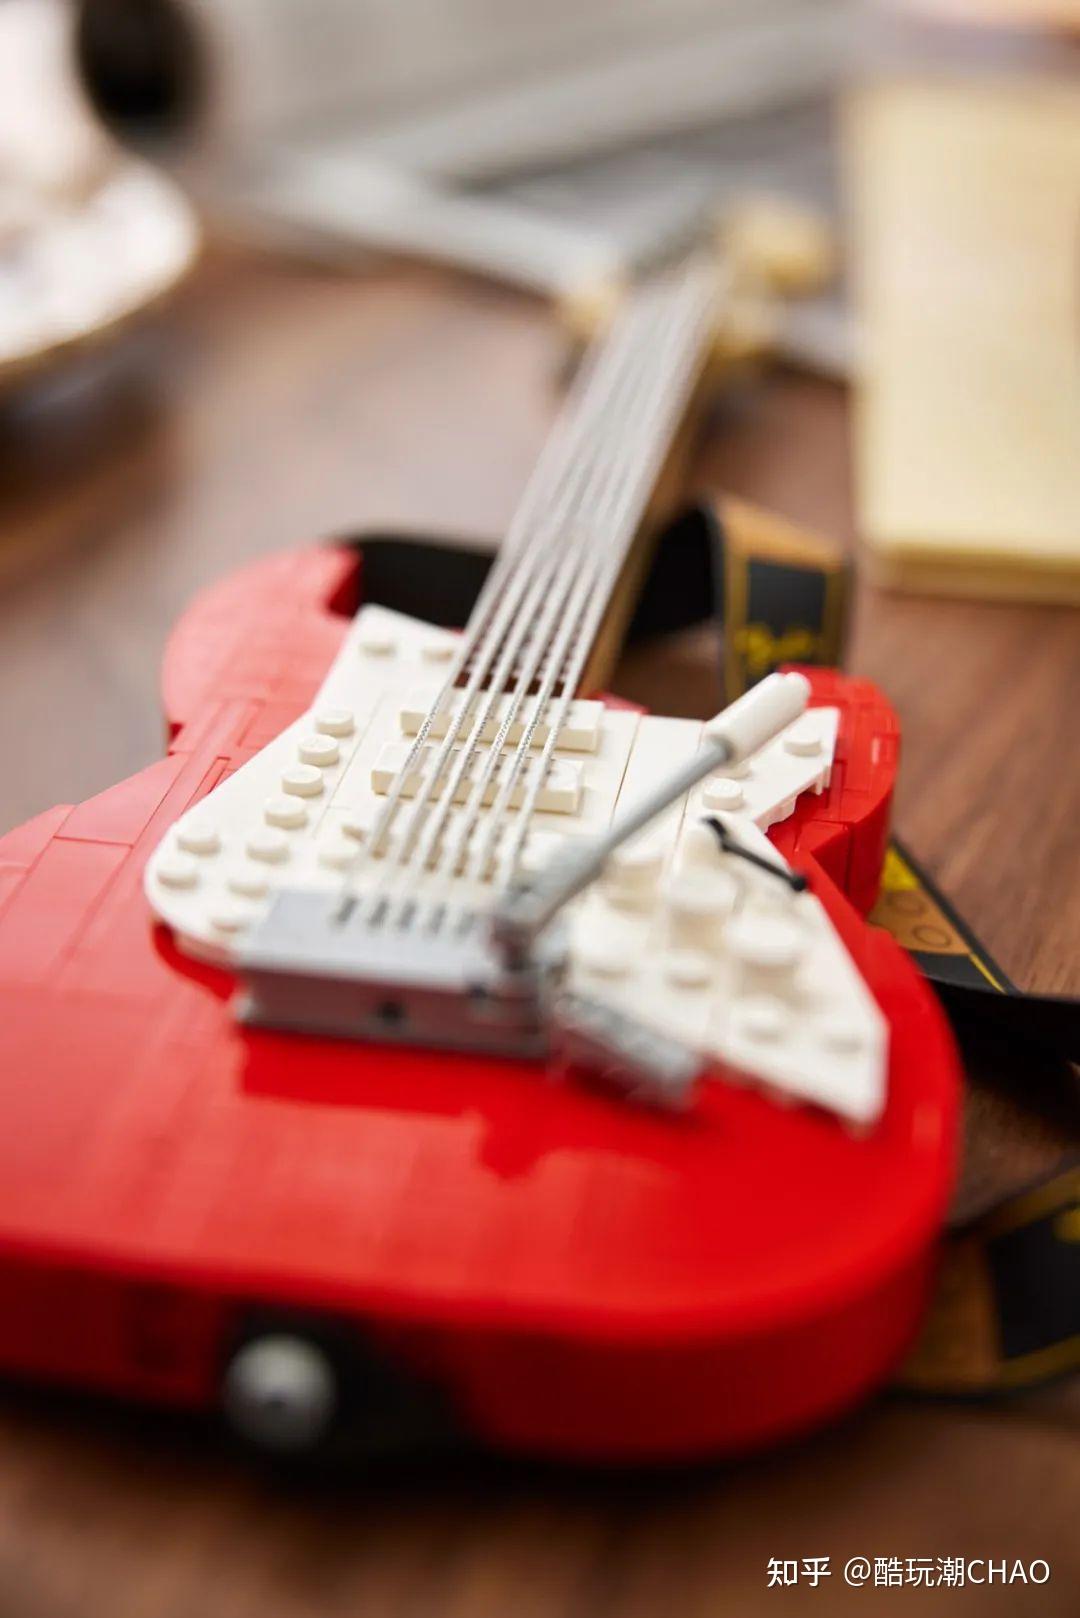 乐高正式发布21329fenderstratocaster吉他有两种颜色